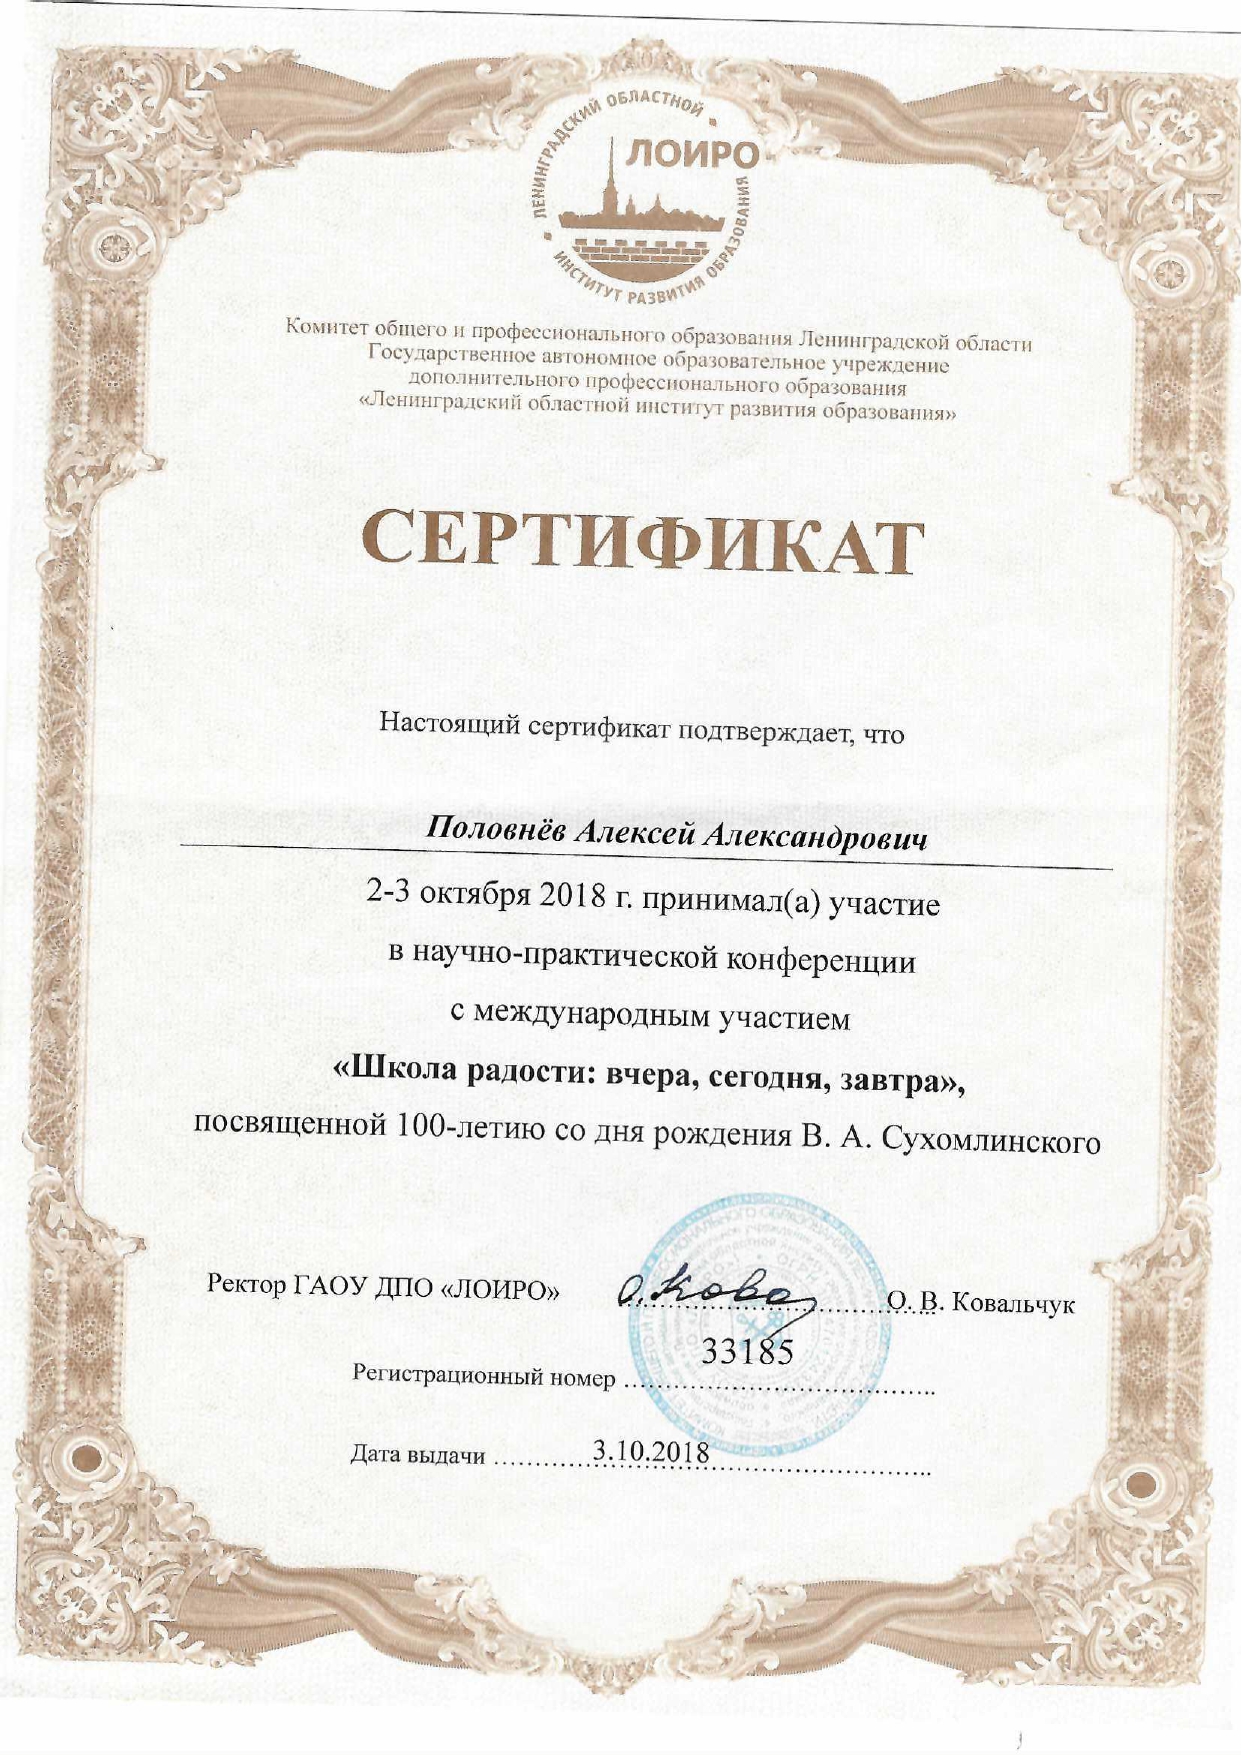 сертификат_лоиро.jpg